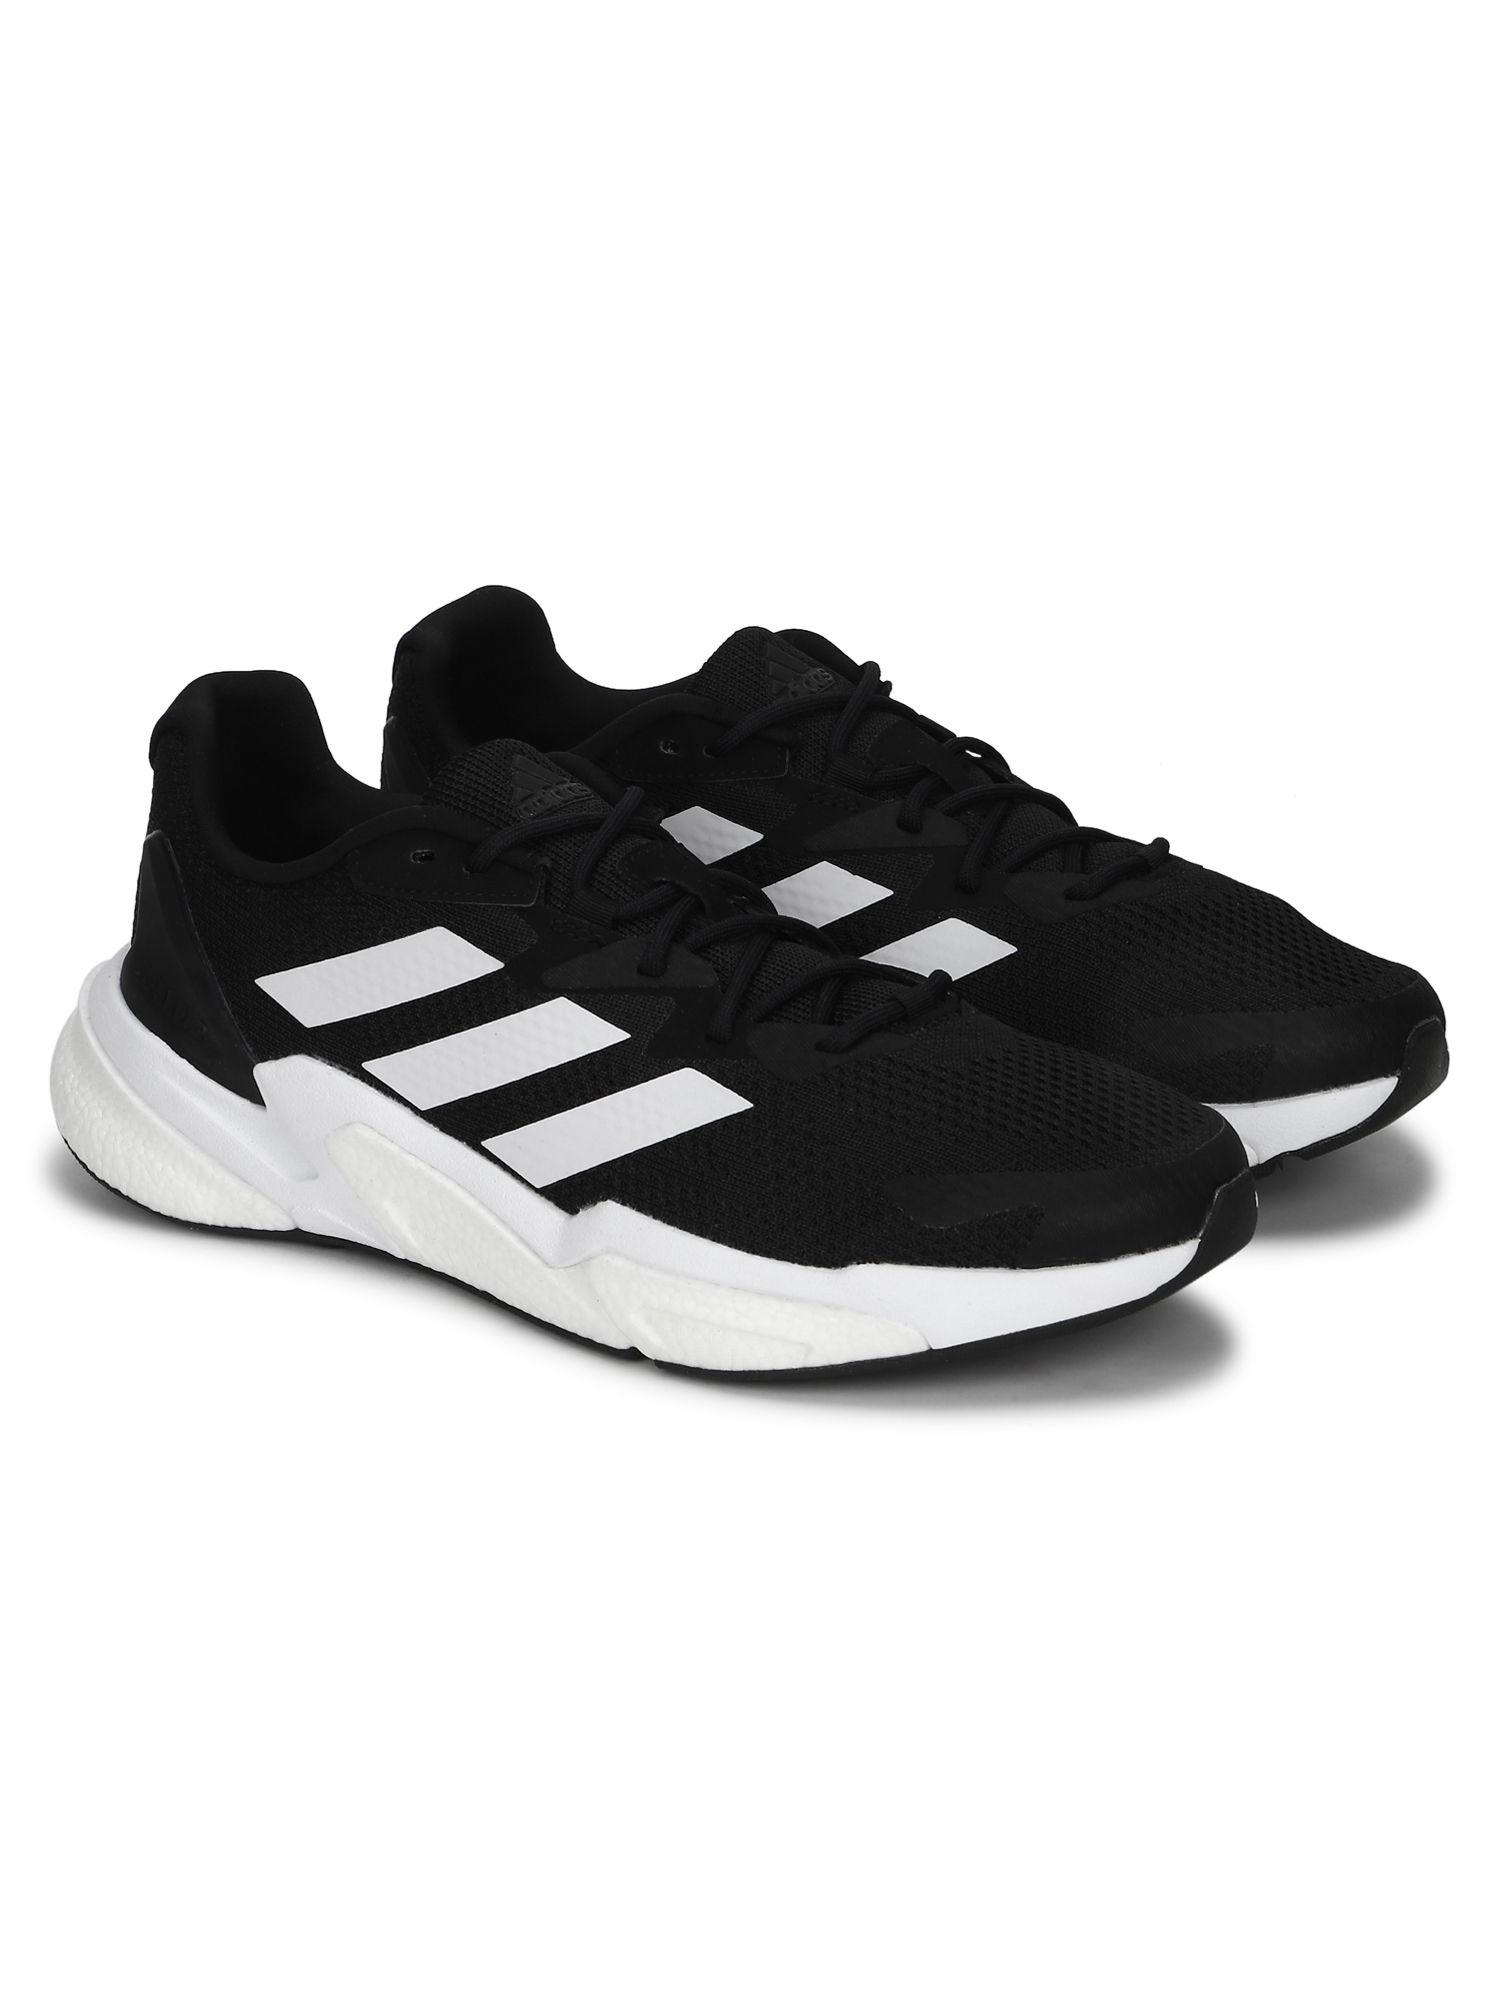 x9000l3-m-black-running-shoes